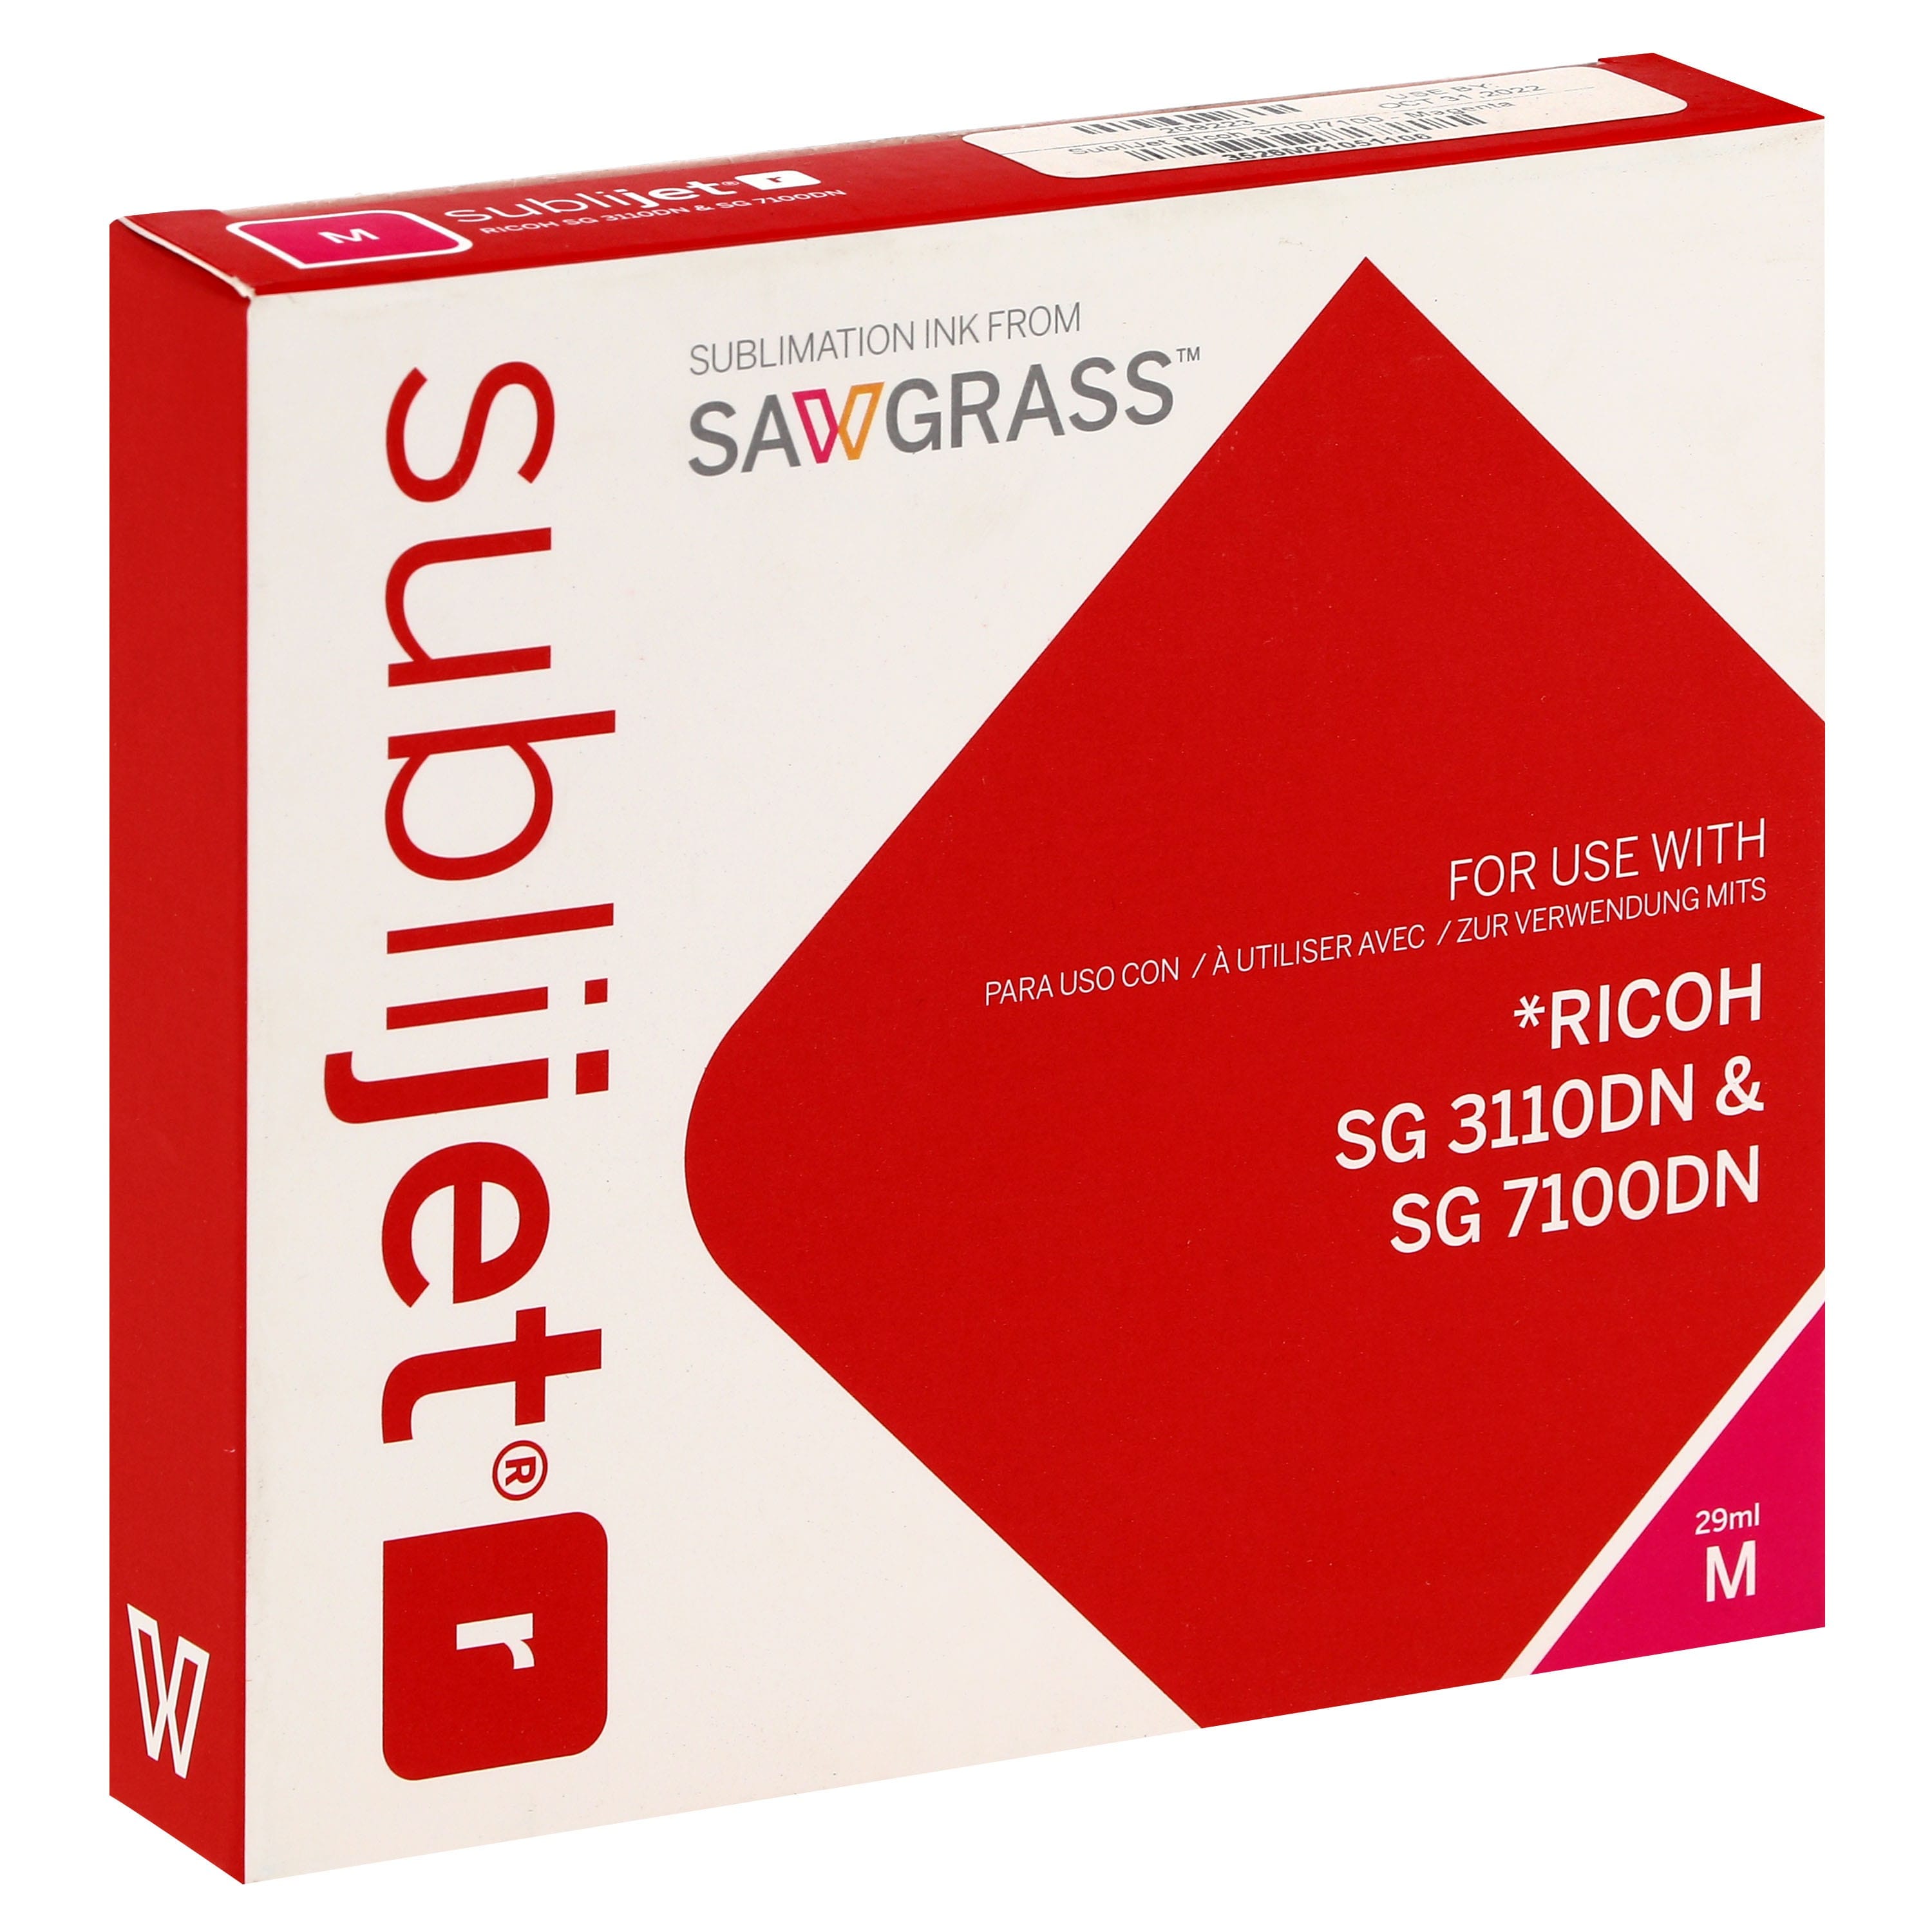 SAWGRASS - Encre sublimation Sublijet-R - Magenta 29ml - pour RICOH SG3110/7100DN